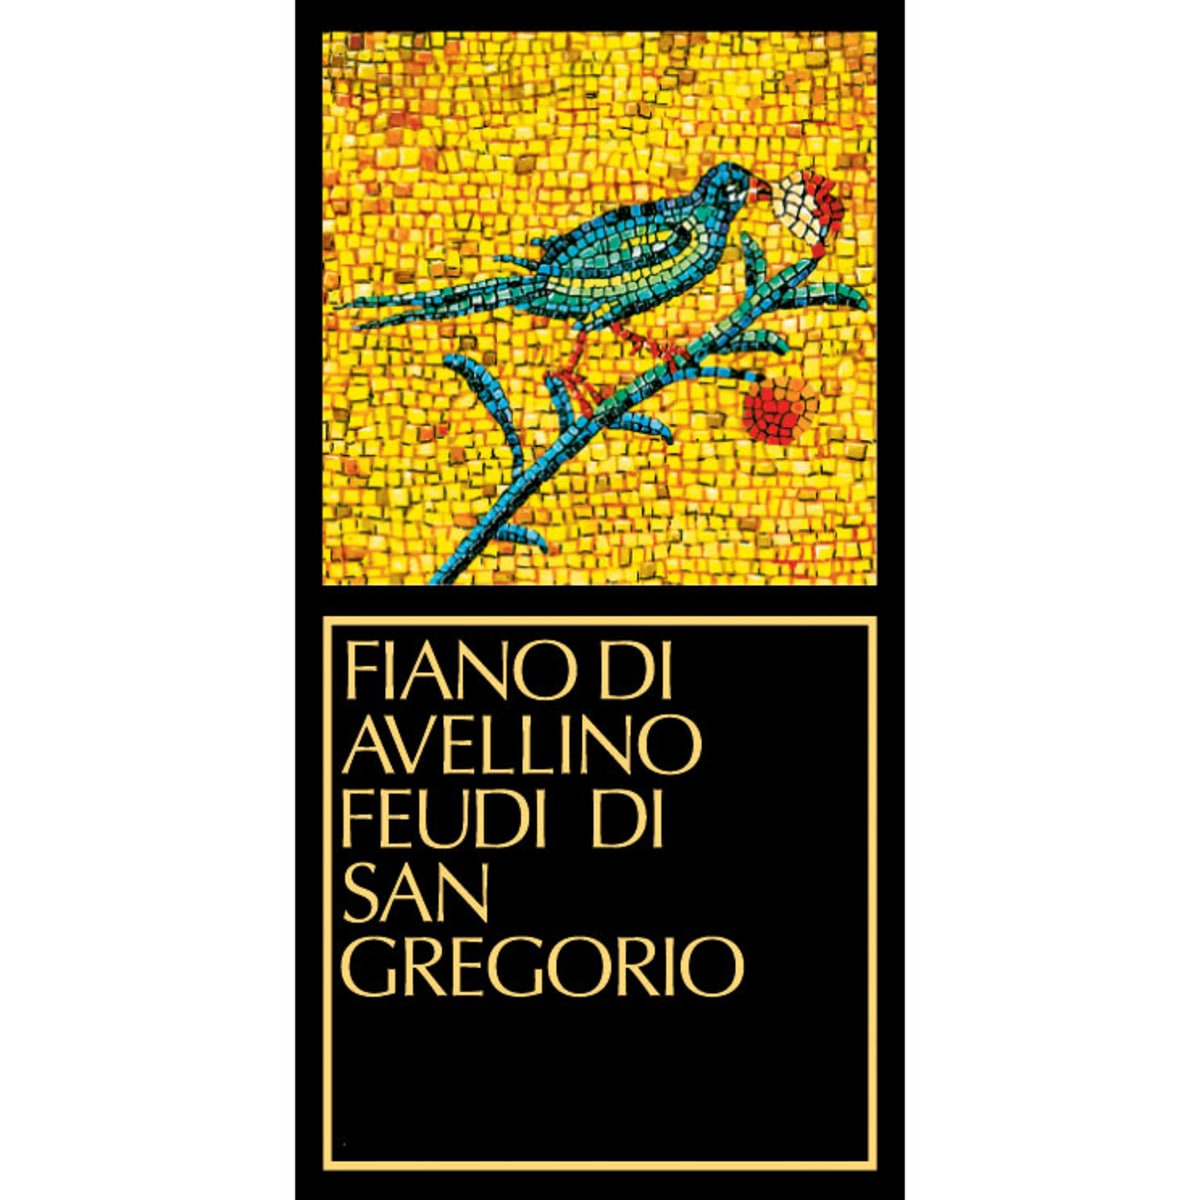 Feudi di San Gregorio Fiano di Avellino 2012 Front Label